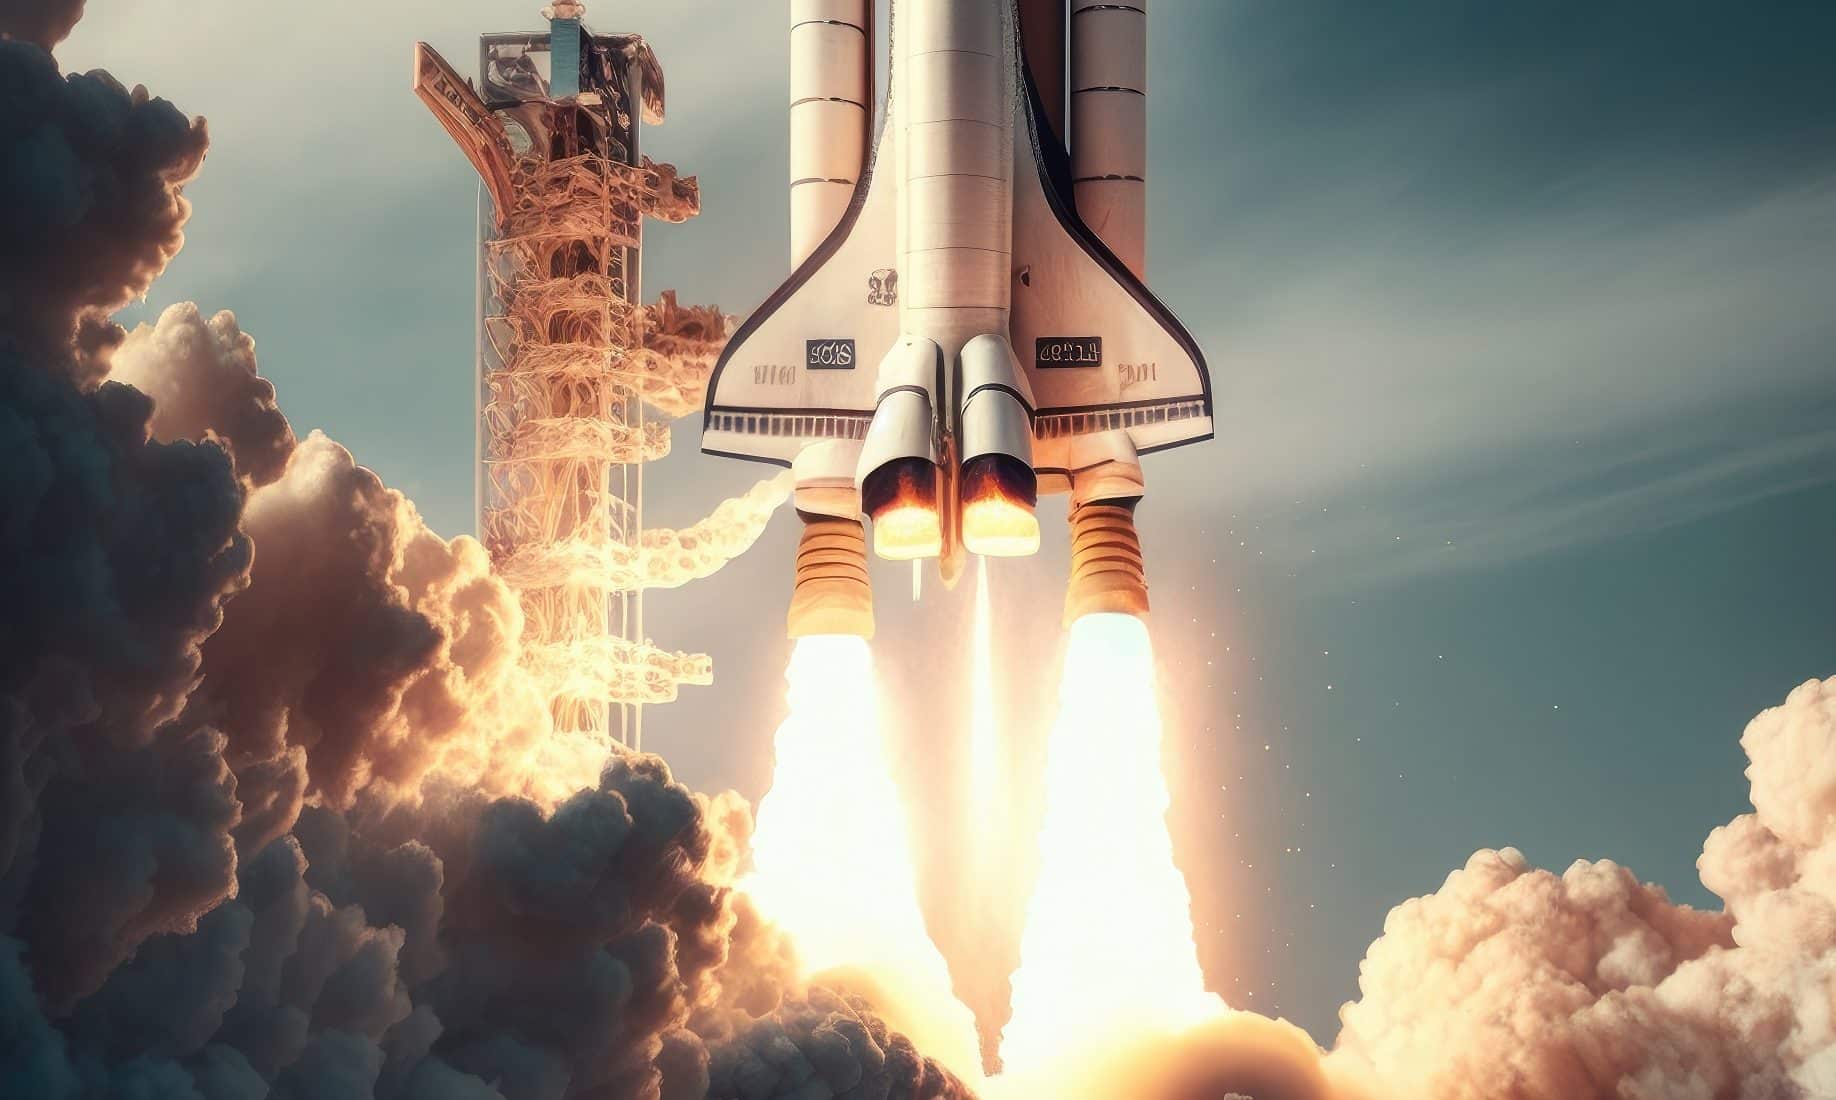 Die Raumfähre Atlantis hatte ihre letzten Weltraumeinsatz. Bild: von svstudioart auf Freepik